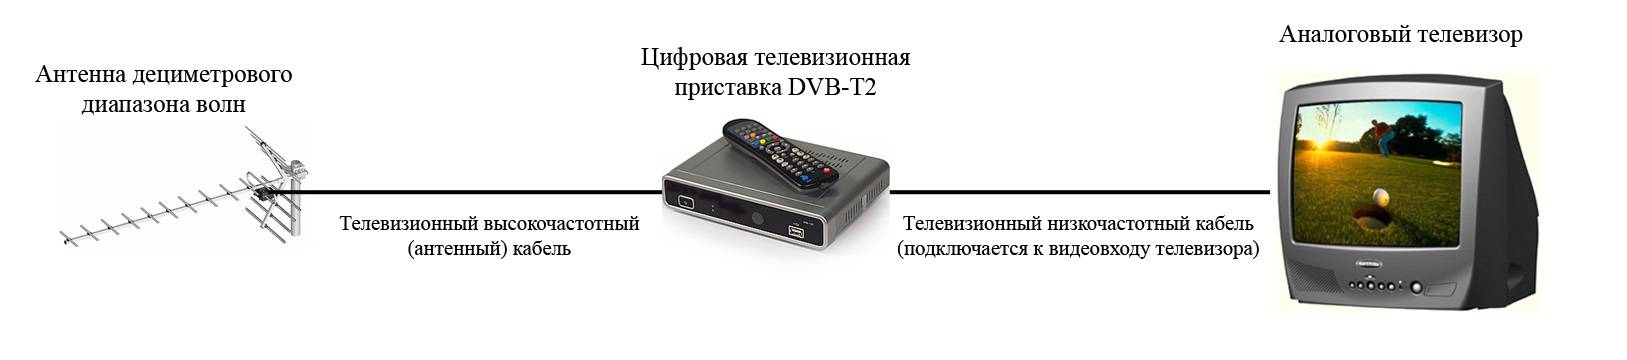 Подключить обычную приставку к телевизору. ТВ-приставка для цифрового телевидения DVB-t2 схема подключения. DVB-t2 приставка схема подключения. Подключить 2 телевизора к цифровой приставке TVB-C. Как подключить старый телевизор к приставке т2.